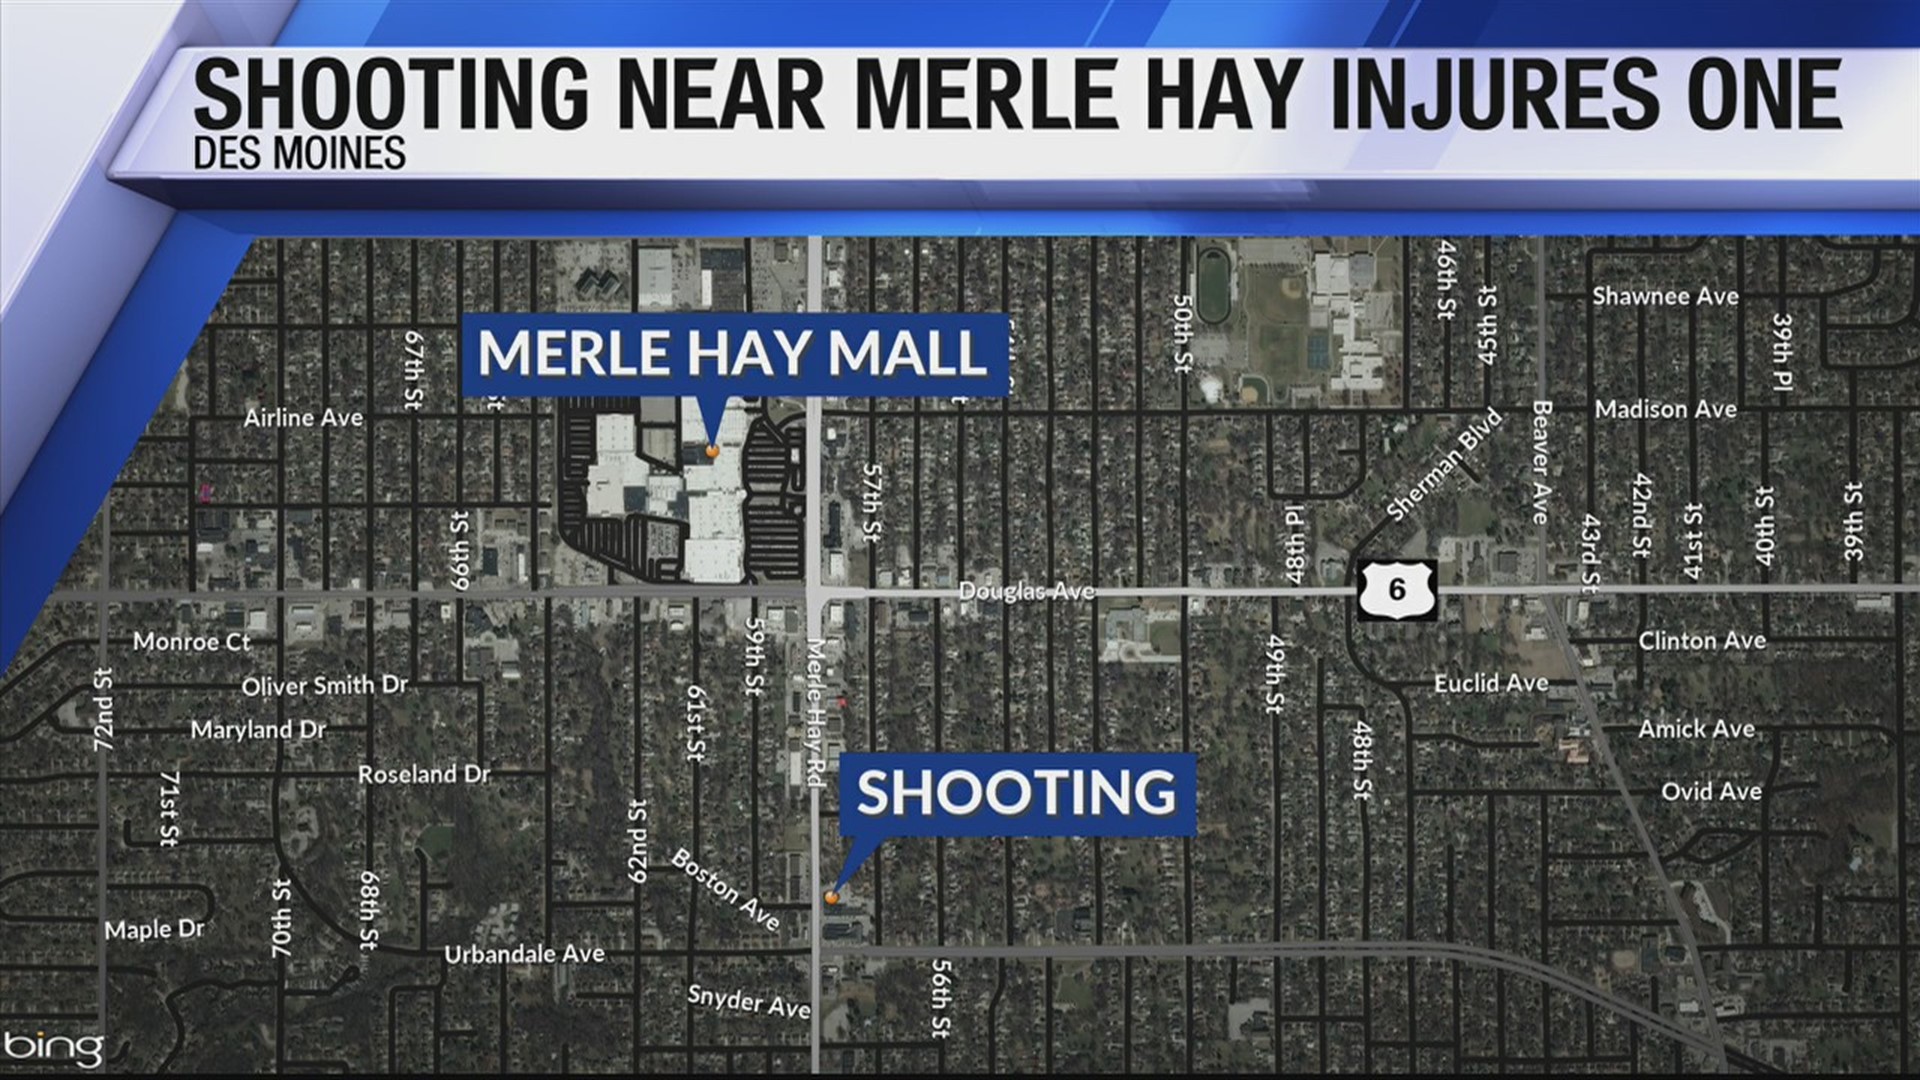 Shooting near Merle Hay injures one